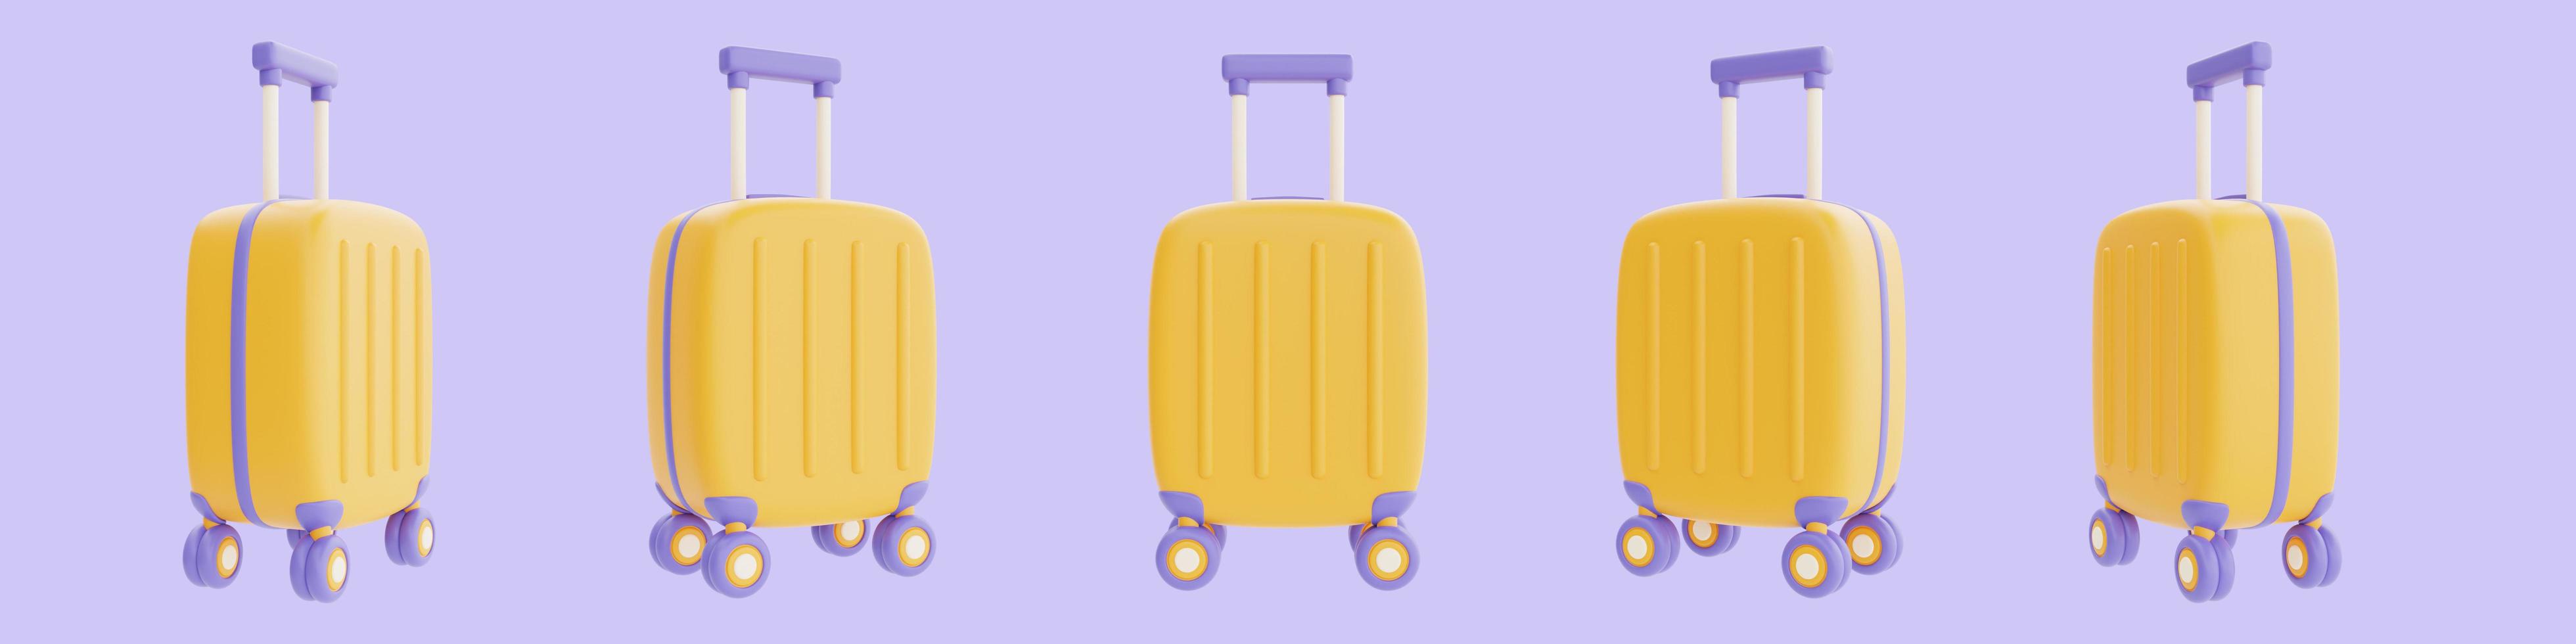 ensemble de valise jaune isolée sur fond violet, tourisme et voyage, rendu 3d photo